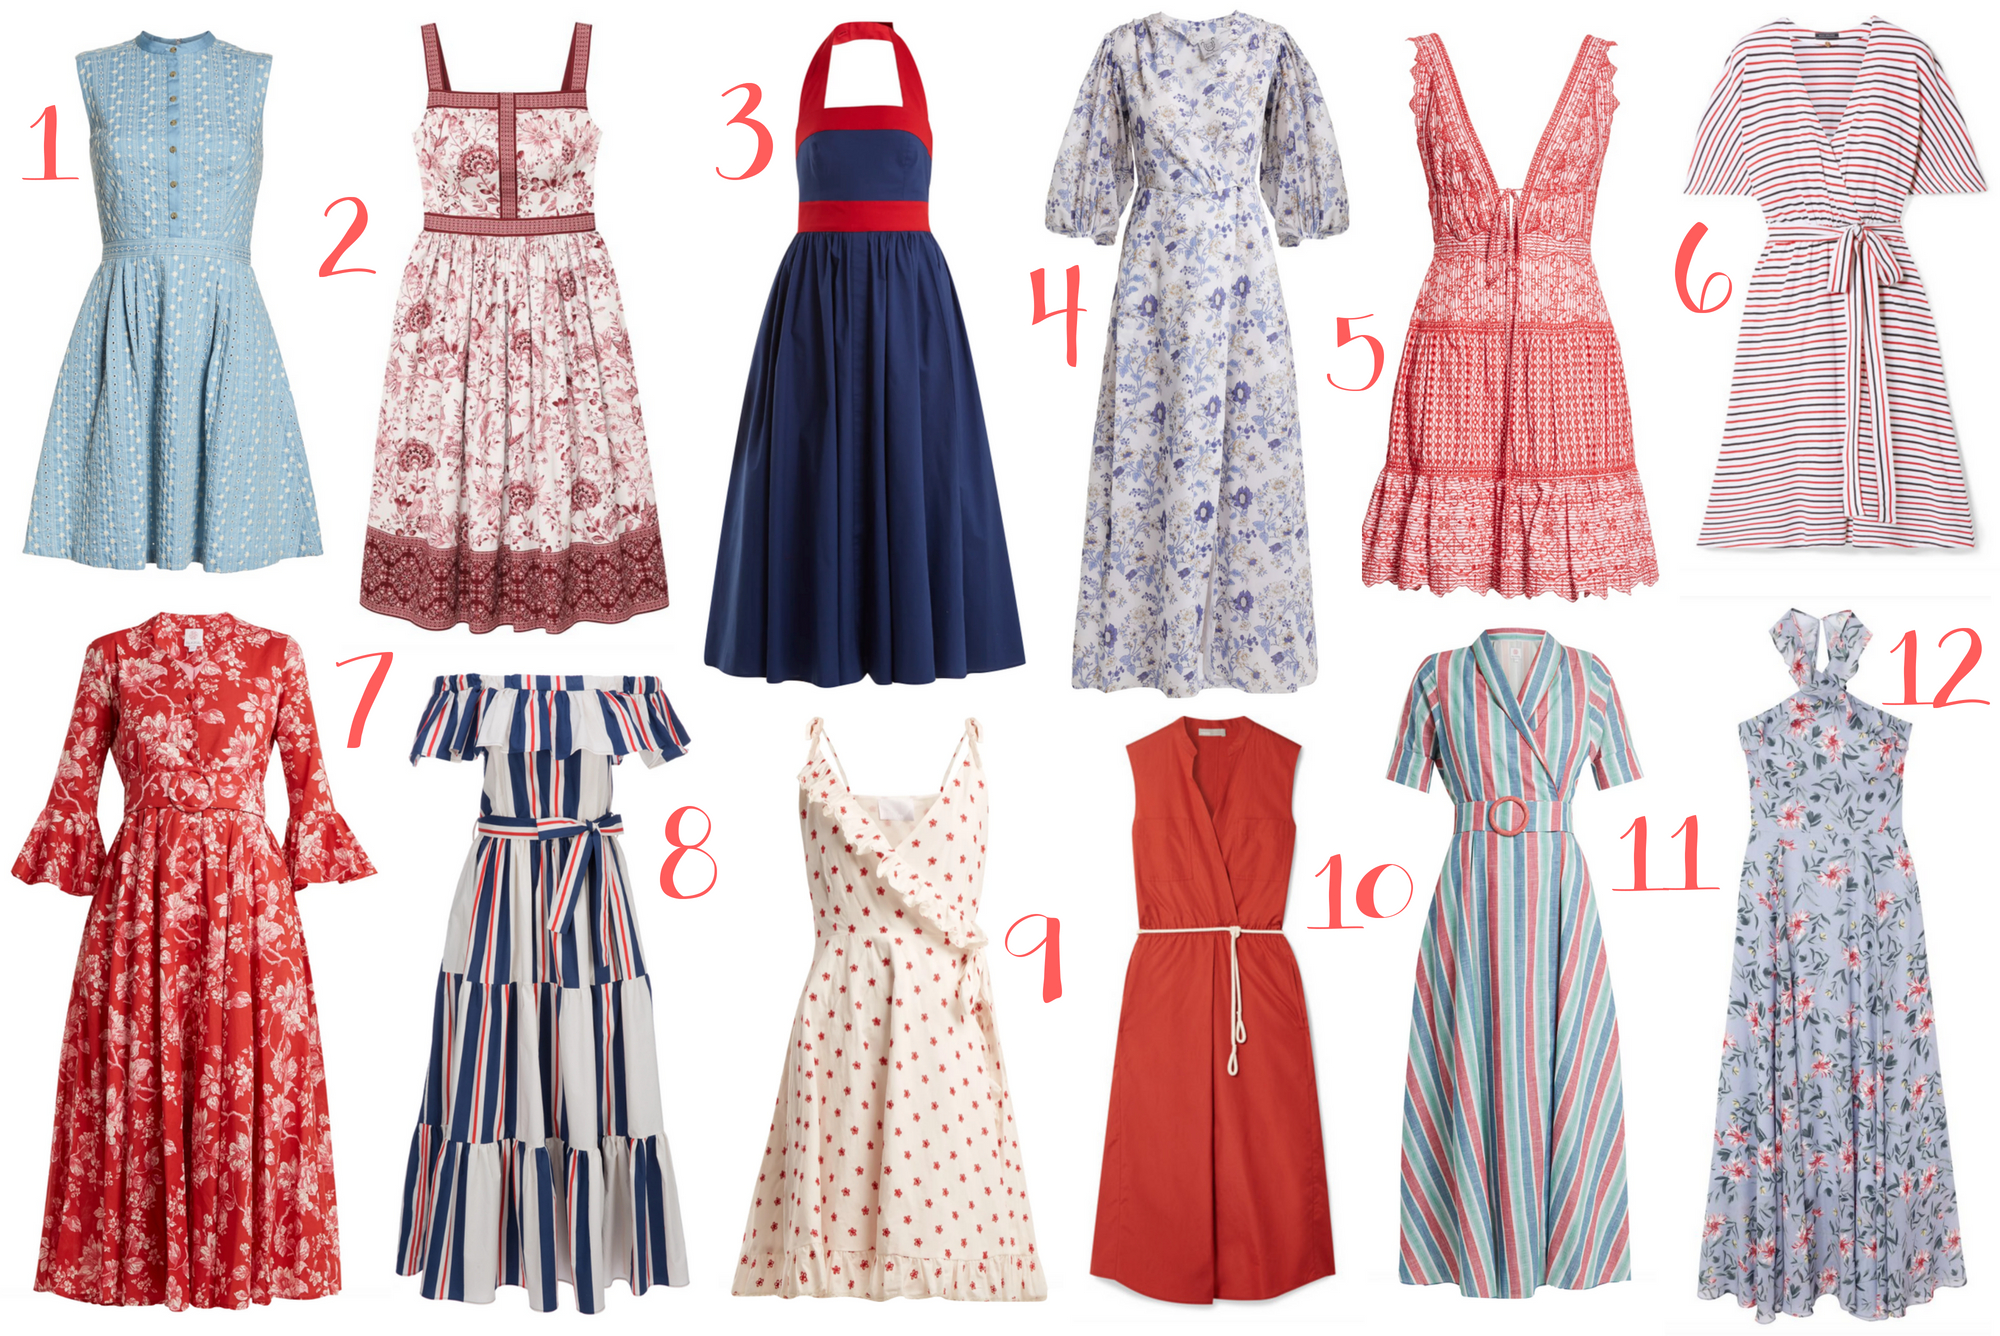 12 Red, White ☀ Blue Dresses For Summer ...